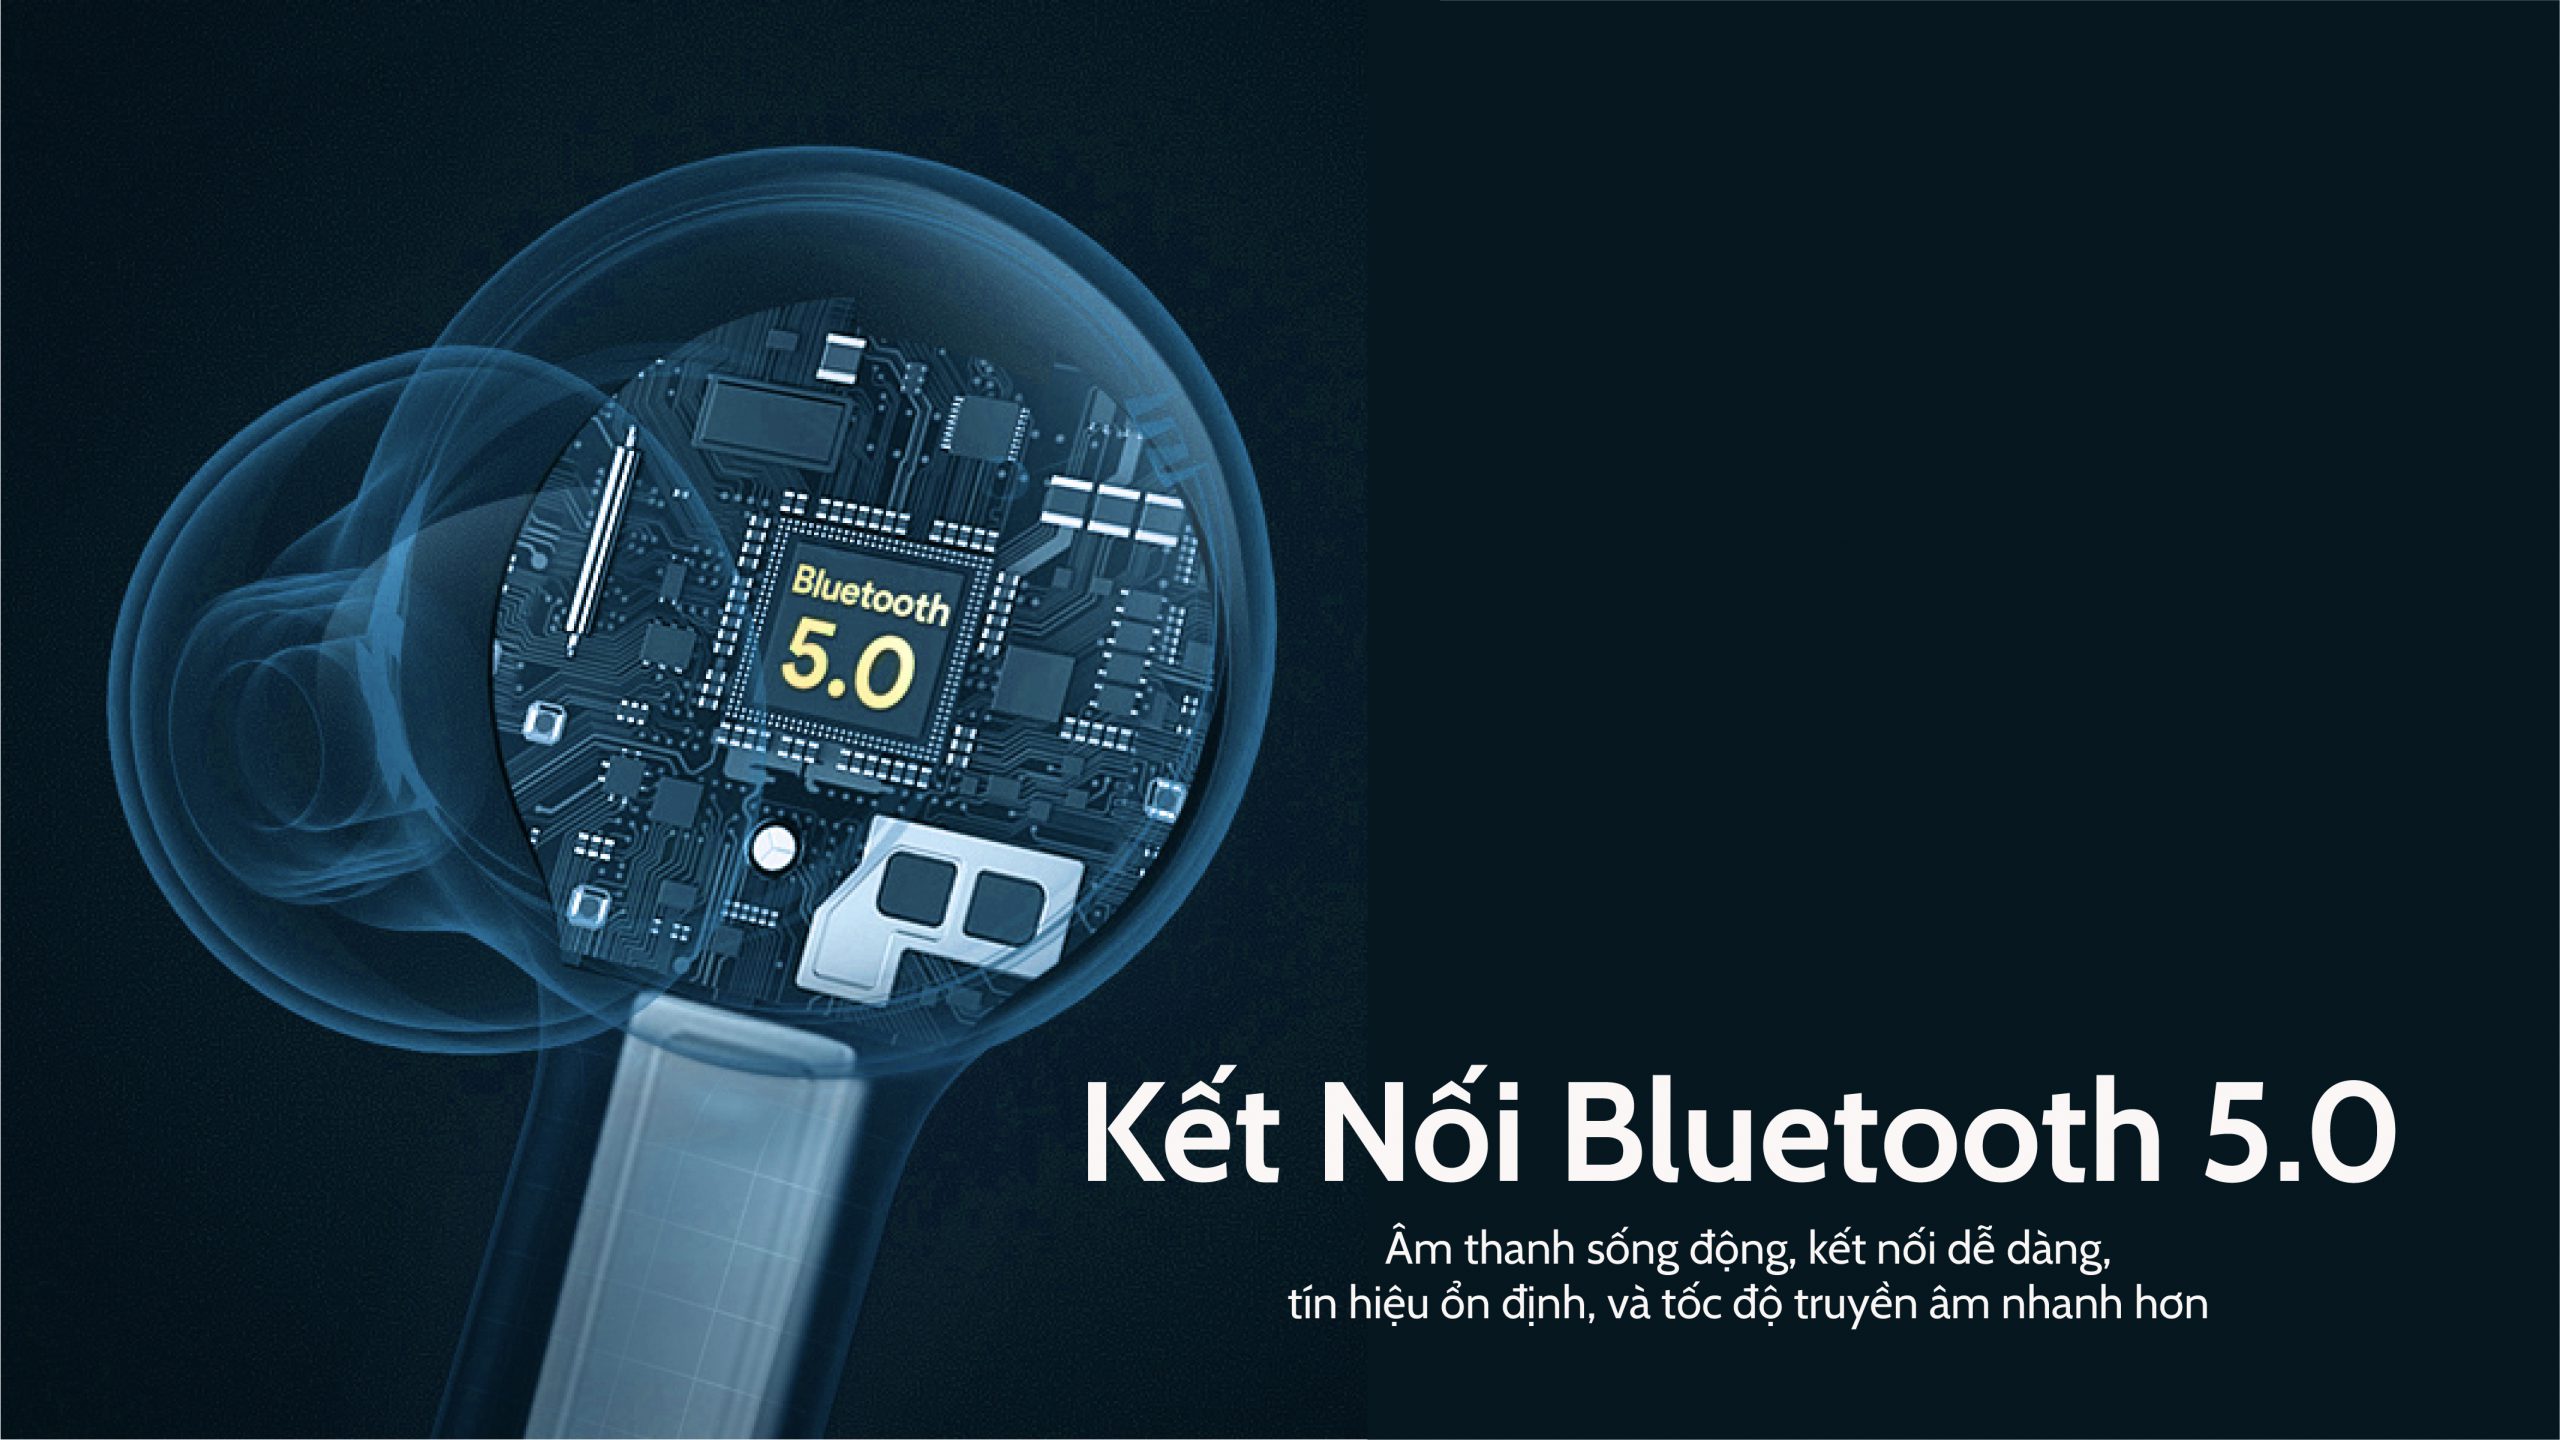 Kết nối Bluetooth 5.0 hiện đại